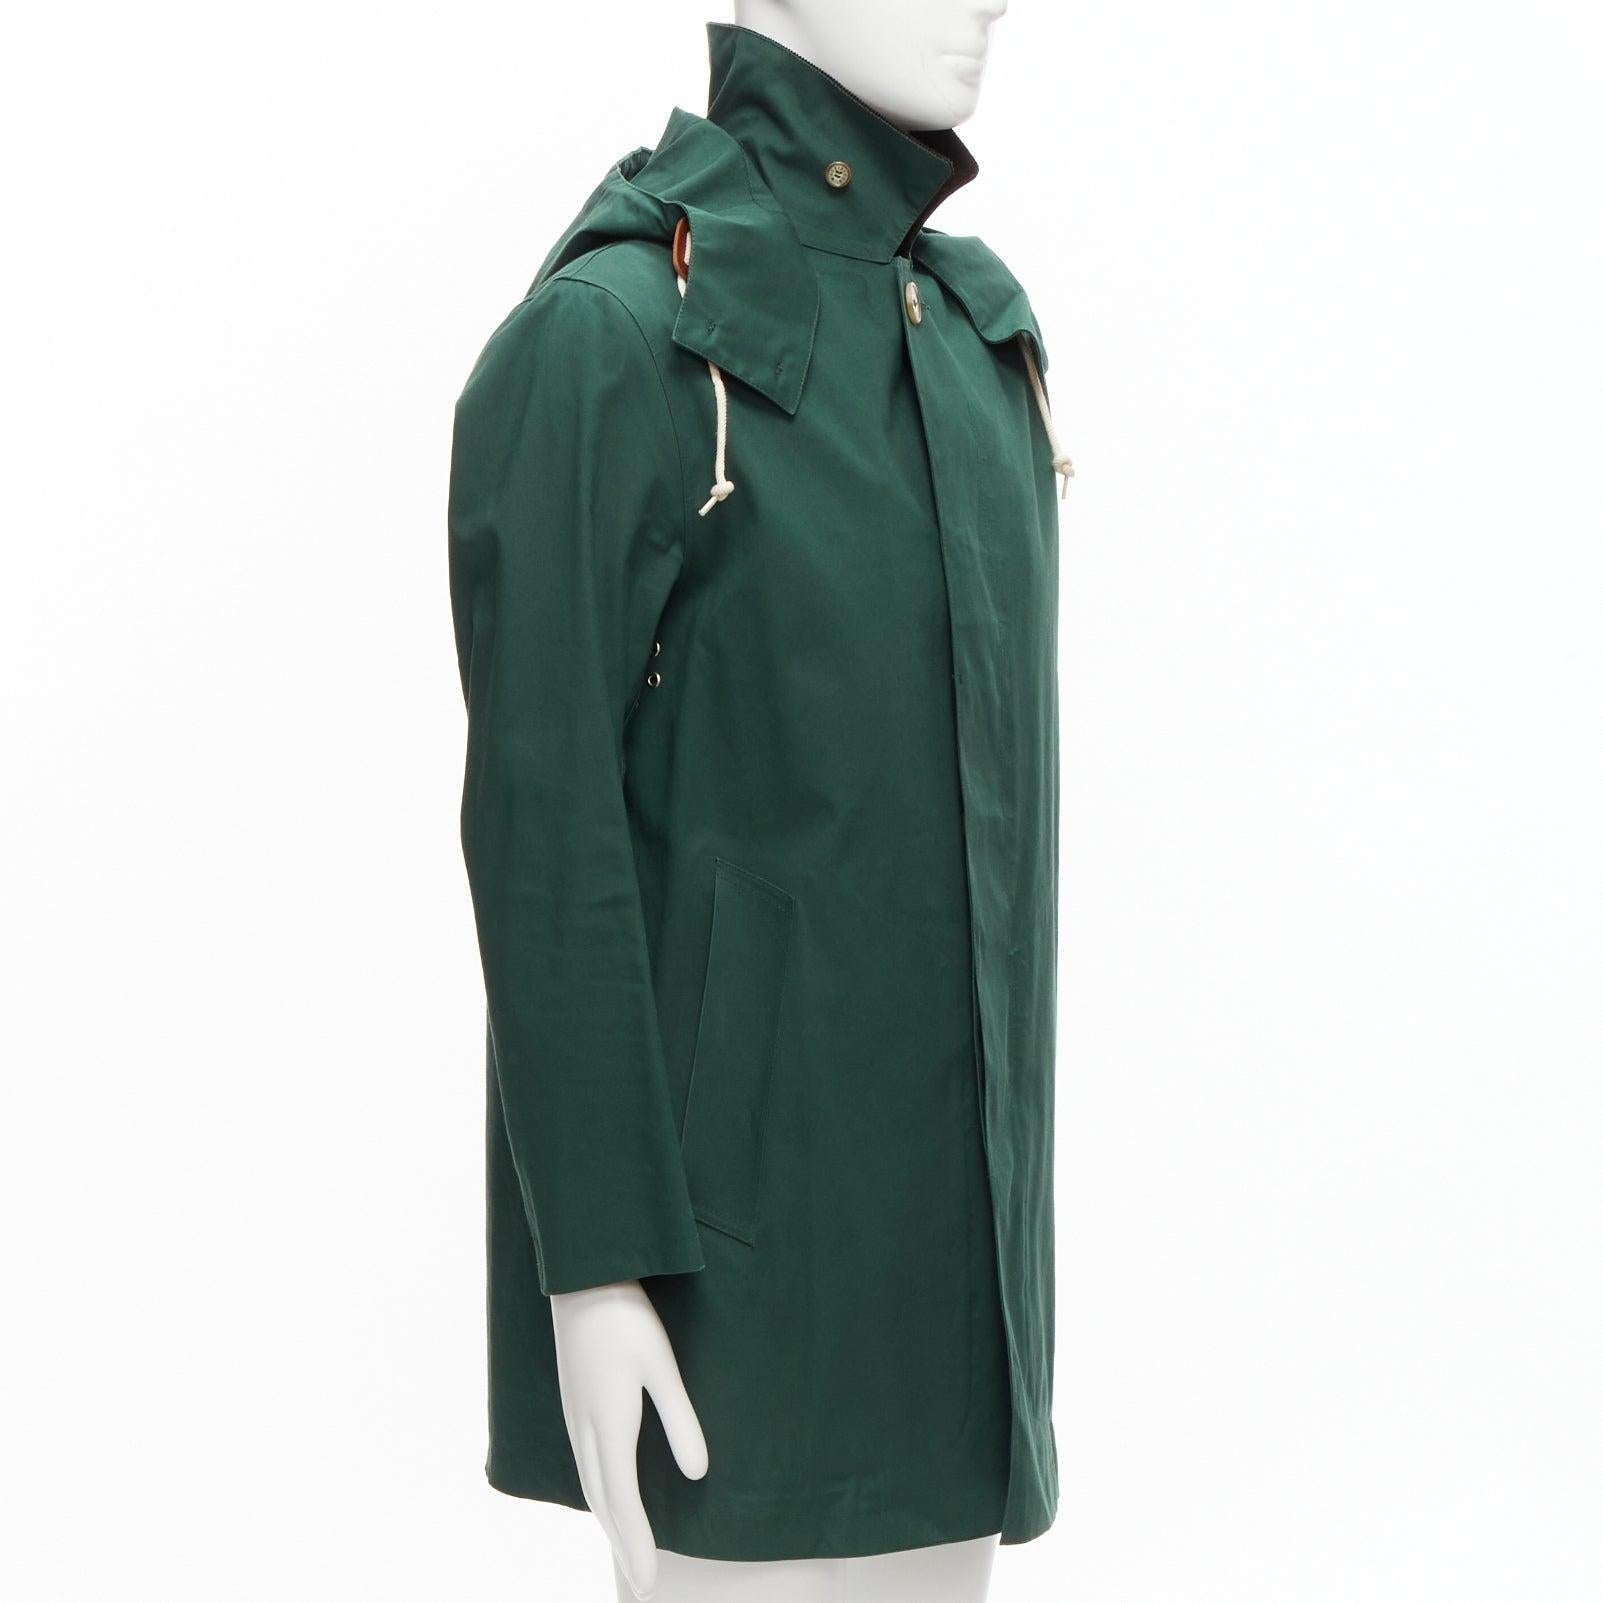 Black MACKINTOSH Harris Tweed green wool tweed lined hooded parka coat UK38 M